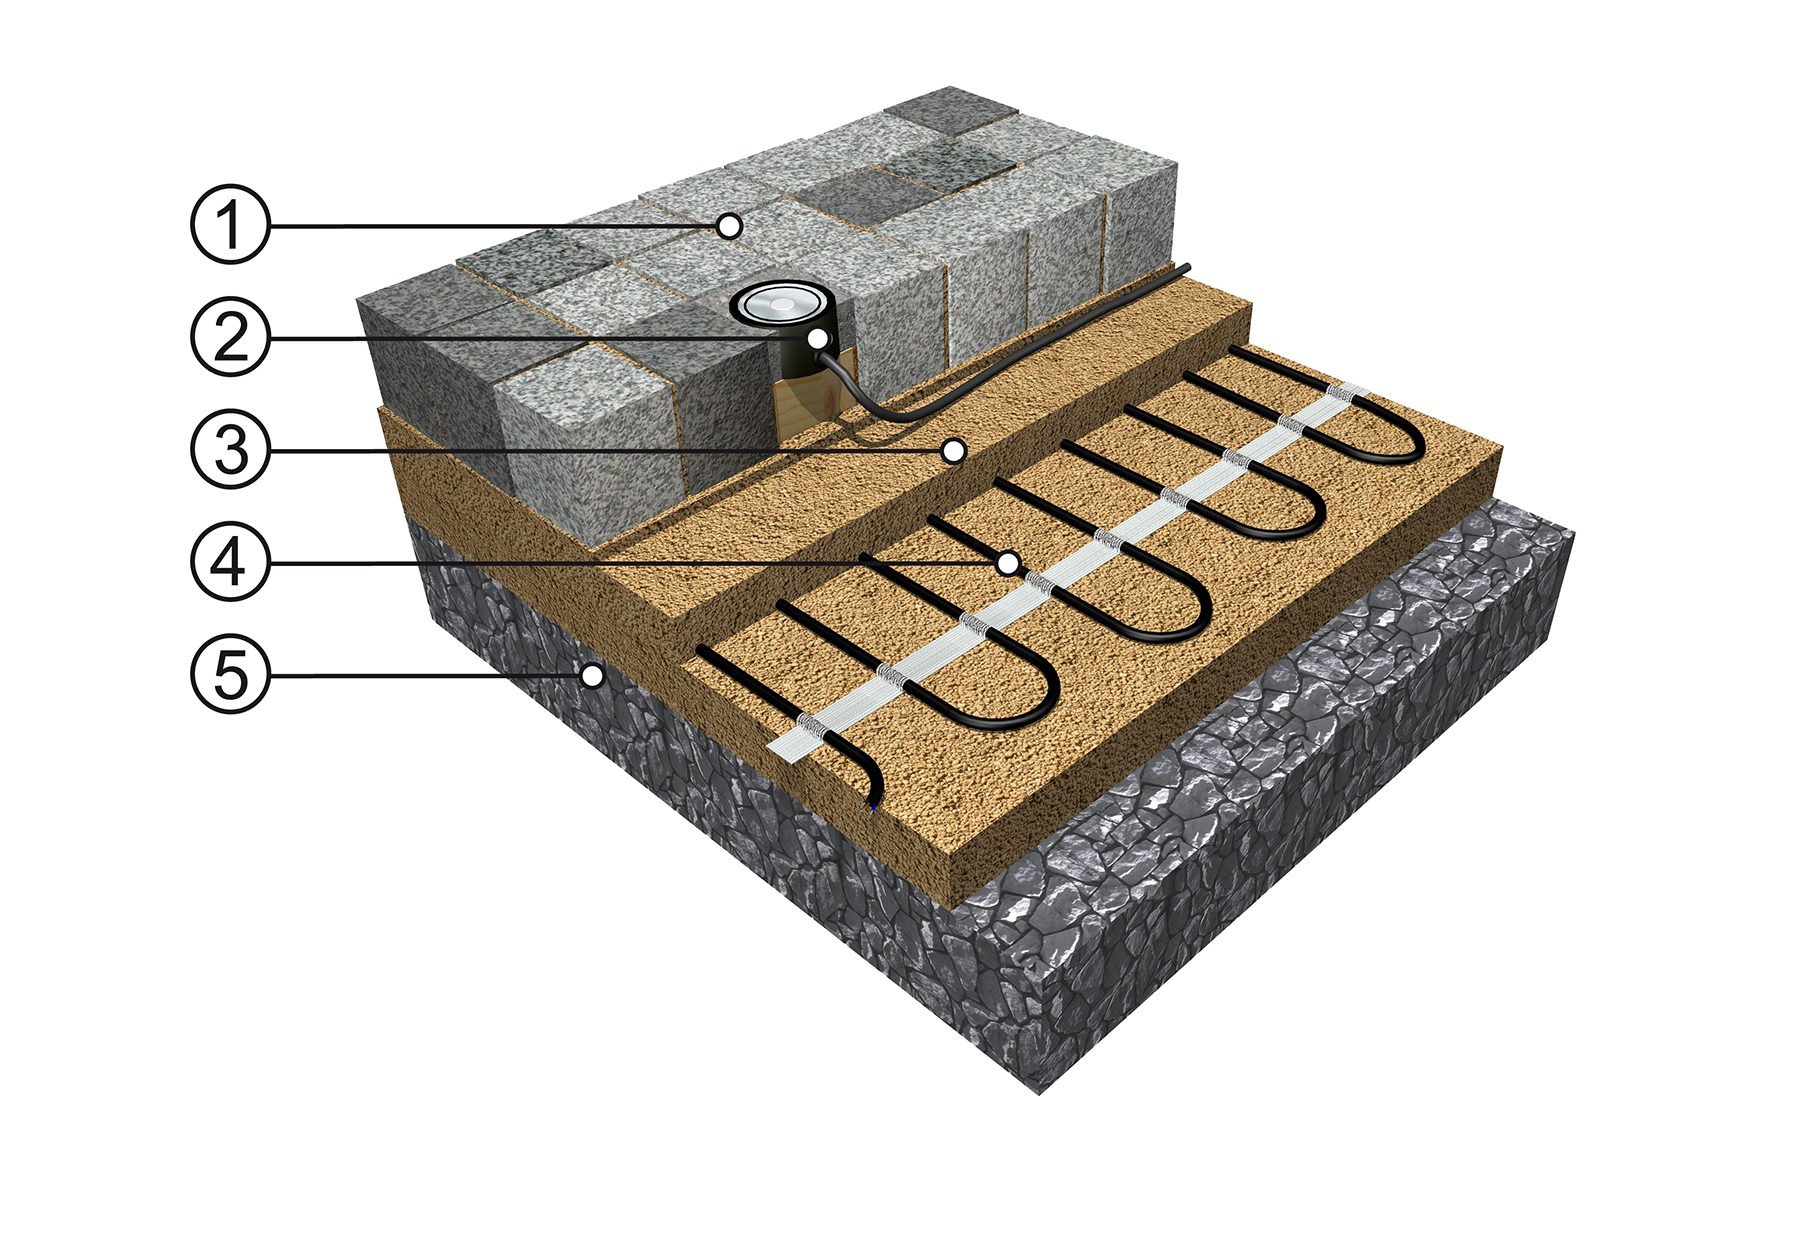 ECOFLOOR CHODNÍK 1 - Zpevněný povrch, např. dlažba 2 - Čidlo vlhkosti (voda, sníh, led) 3 - Písková zásyp a podsyp kabelu 4 - Topný kabel ECOFLOOR(R) MAPSV/MADPSP nebo rohož MST/MDT 5 - Pevný štěrkový podklad (makadam)